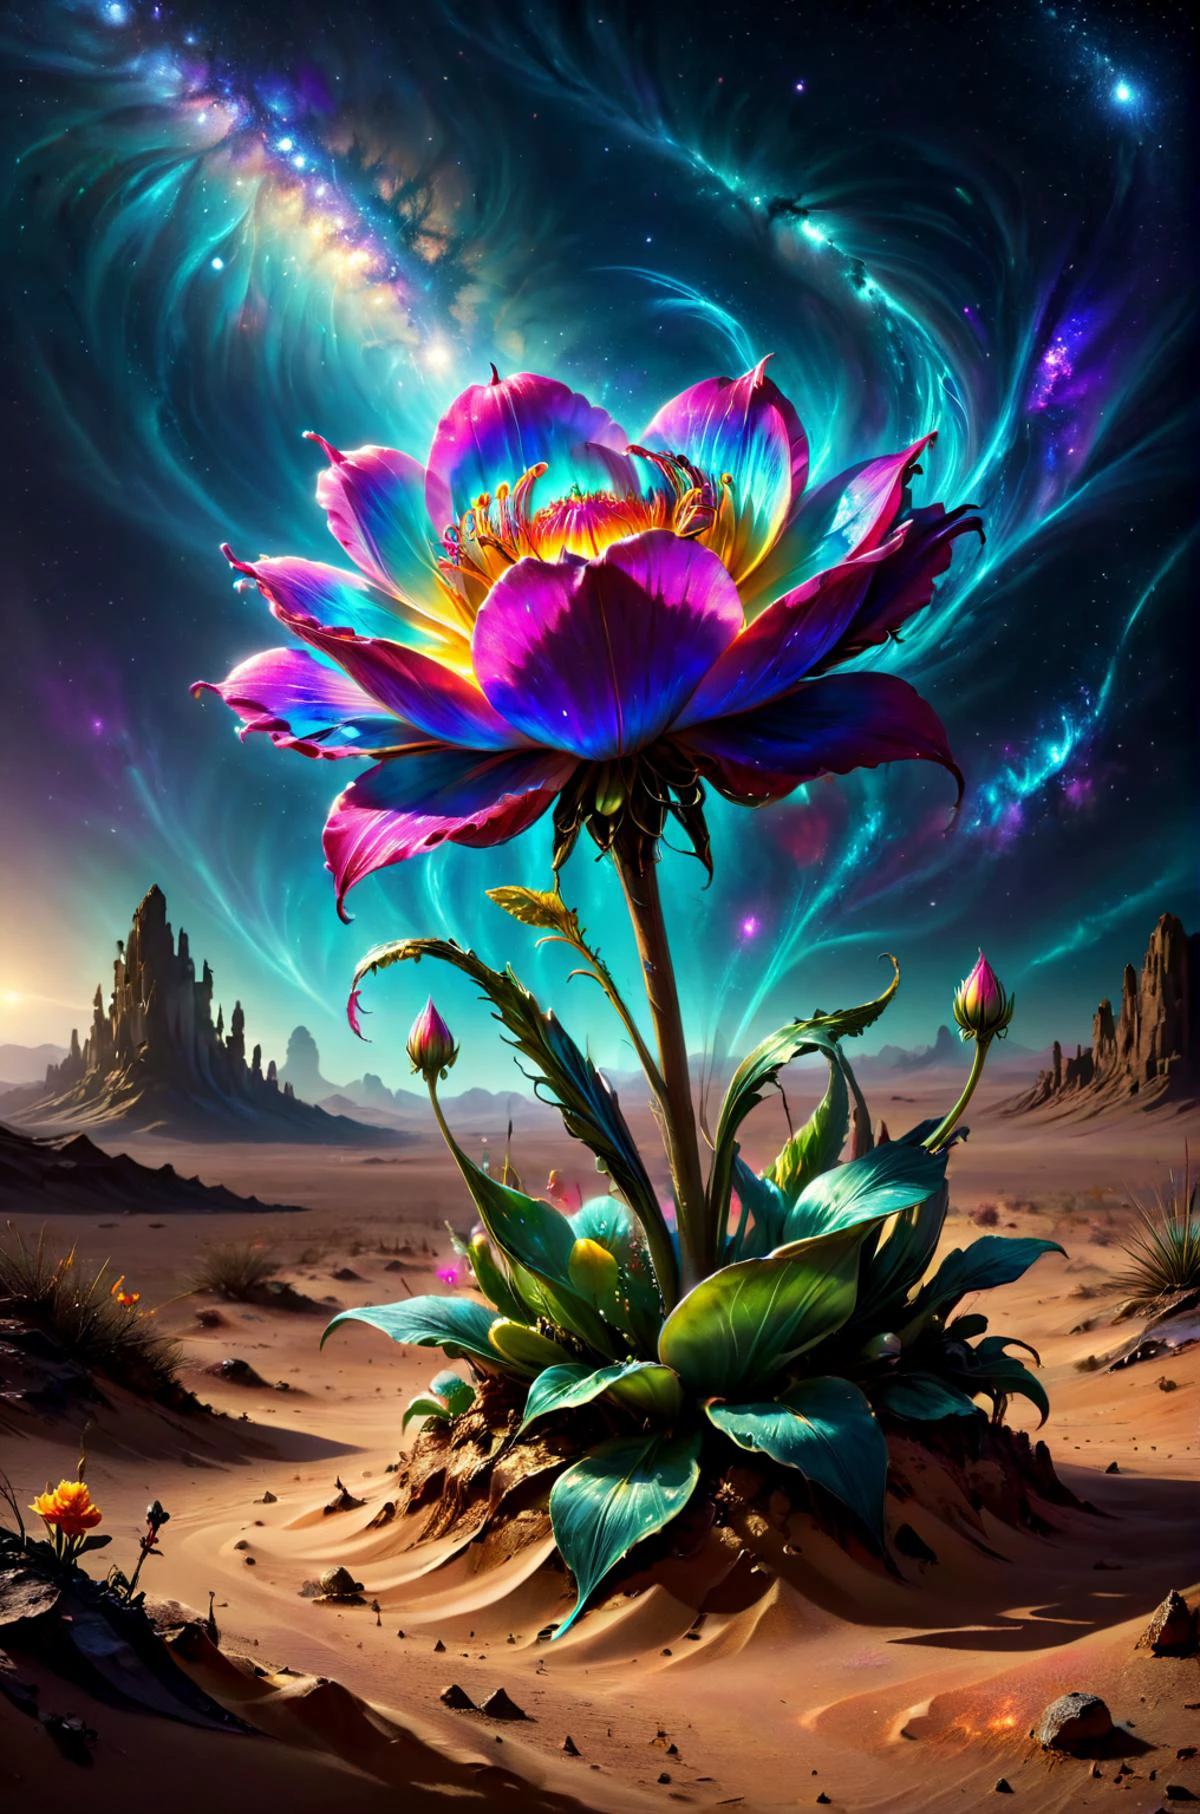 ไม่มีตัวตน fantasy concept art of  horror-themed breathtaking a single delicate flower growing in the middle of the desert ColorART, Alienzkin สีสันสดใส DonMASKTexXL  , ผลงานชิ้นเอก, ได้รับรางวัล, มืออาชีพ, มีรายละเอียดสูง, น่าขนลุก, ไม่มั่นคง, มืด, น่ากลัว, ใจจดใจจ่อ, เคร่งขรึม, มีรายละเอียดสูง, งดงาม, เกี่ยวกับสวรรค์, ไม่มีตัวตน, จิตรกร, มหากาพย์, คู่บารมี, ขลัง, ศิลปะแฟนตาซี, หน้าปก, ช่างฝัน